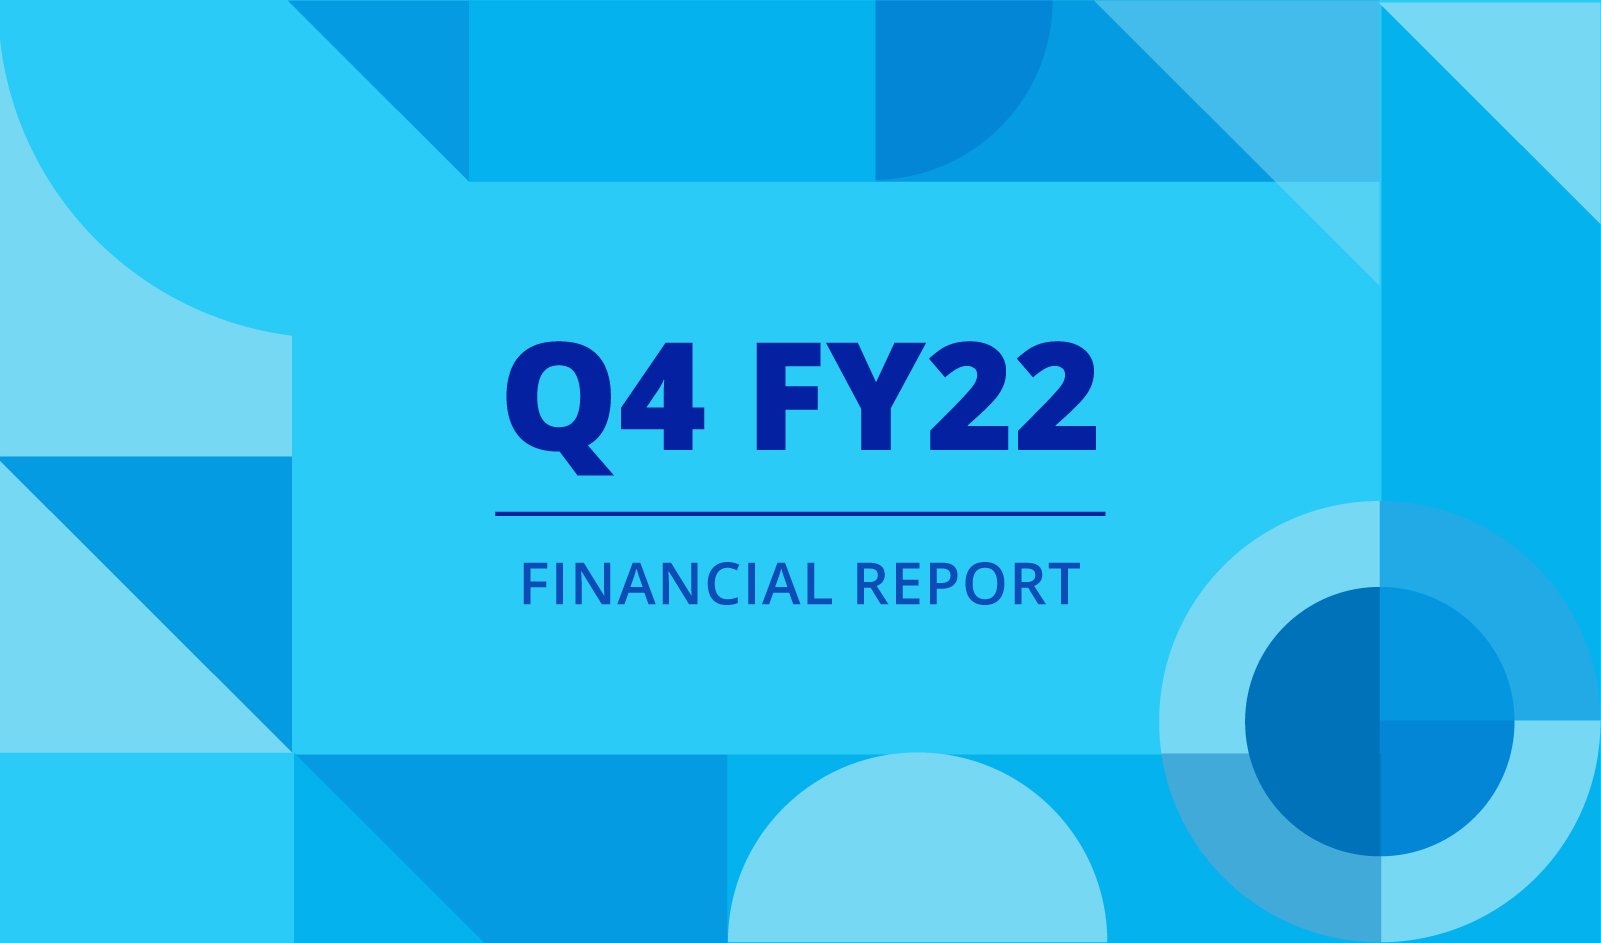 PR_Q4FY22 Financial report_Banner_v02